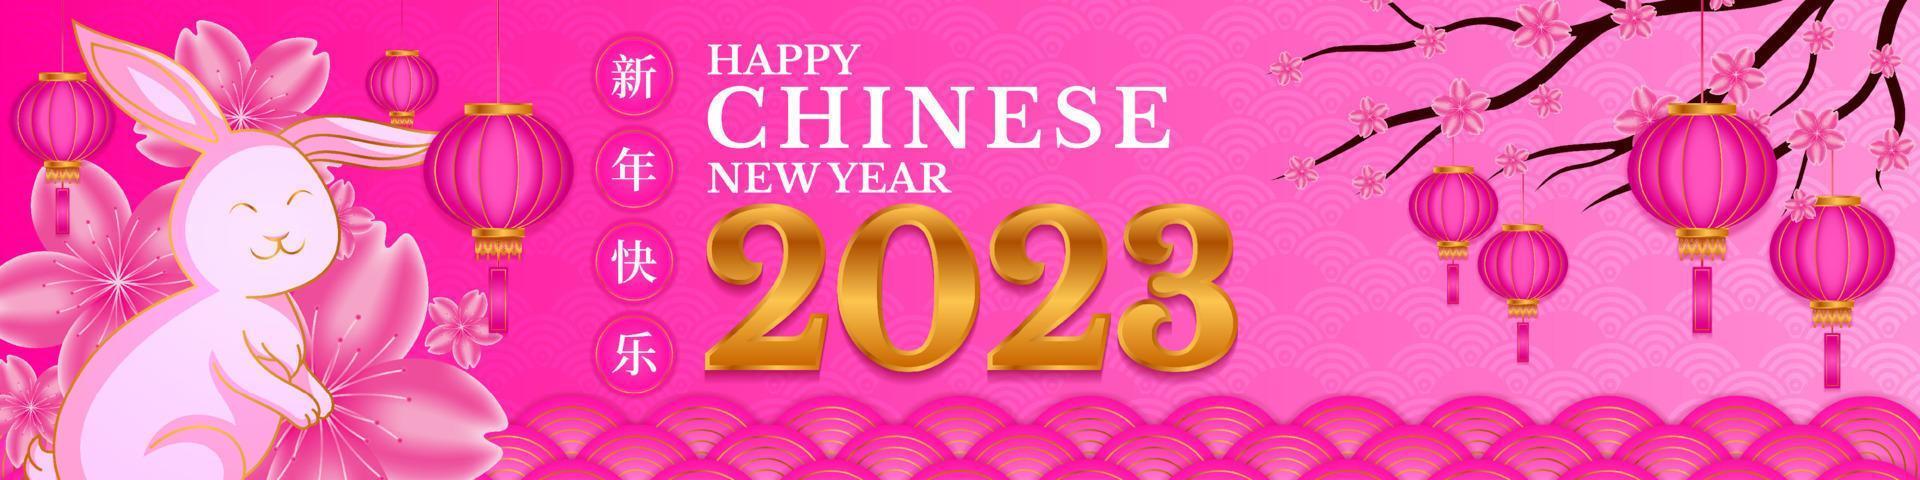 Lycklig kinesisk ny år 2023, år av de kanin, lunar ny år begrepp med lykta eller lampa, prydnad, och rosa guld bakgrund för försäljning, baner, affischer, omslag design mallar, utfodra social media vektor